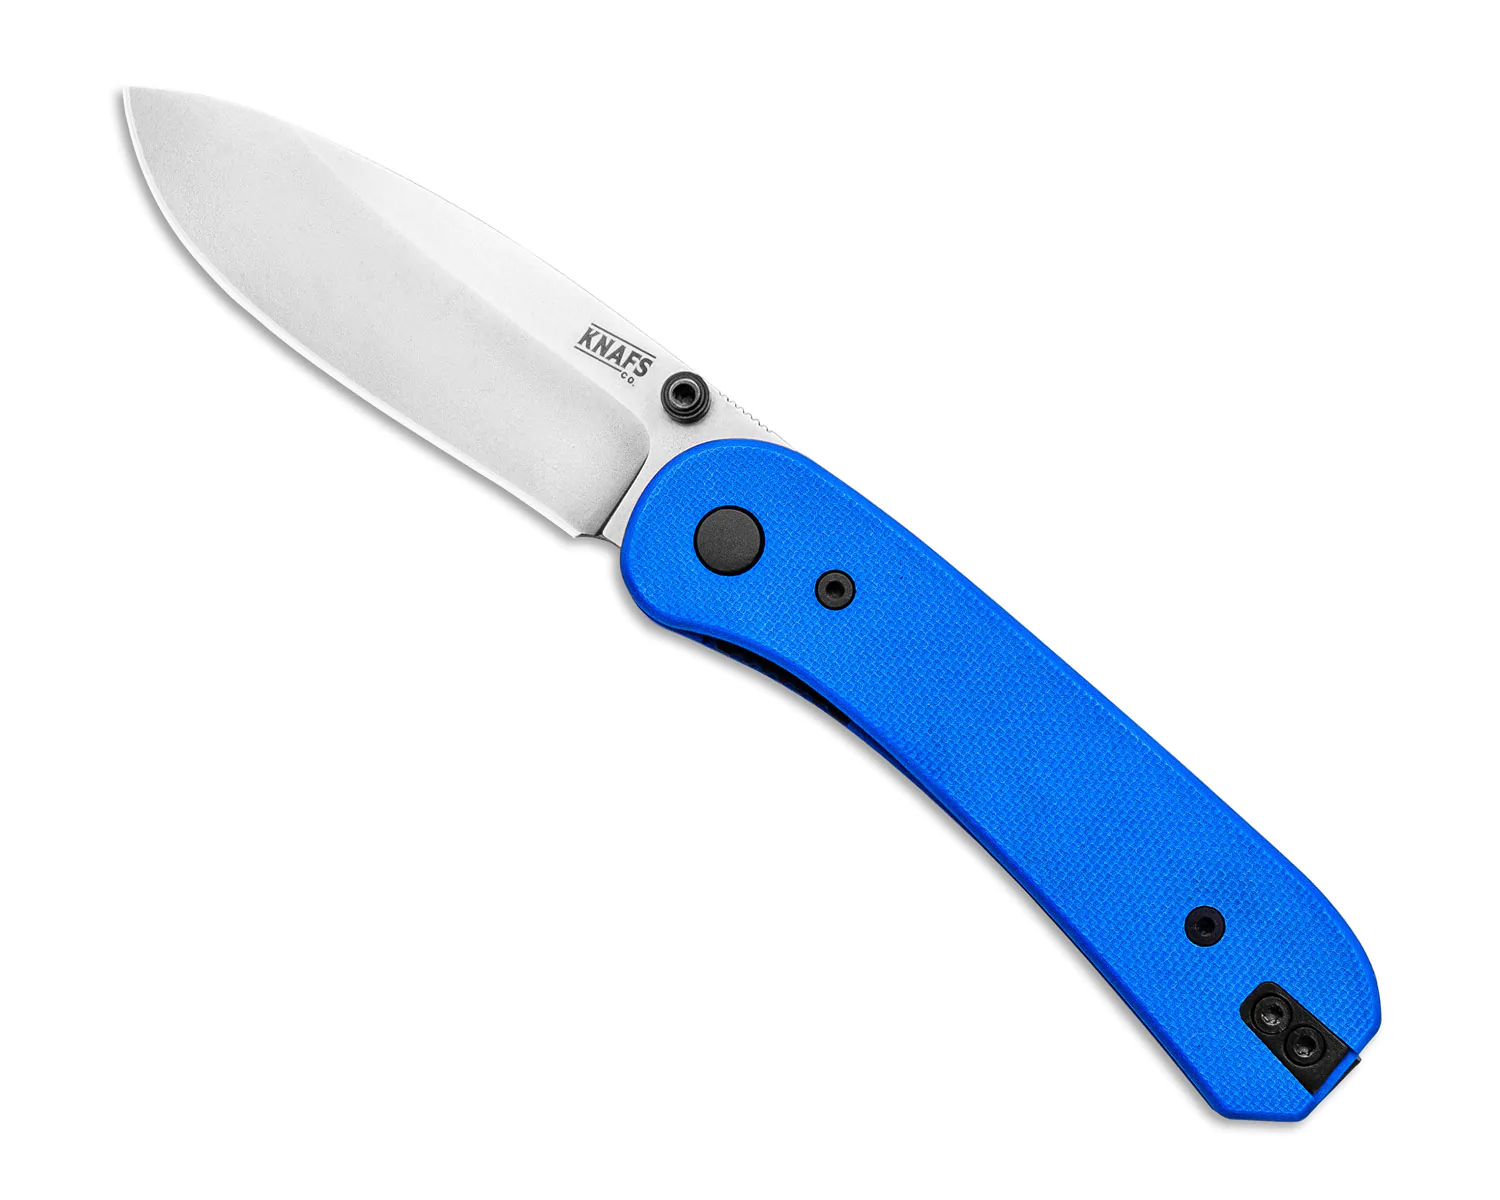 Knafs Lander EDC Knife Blue